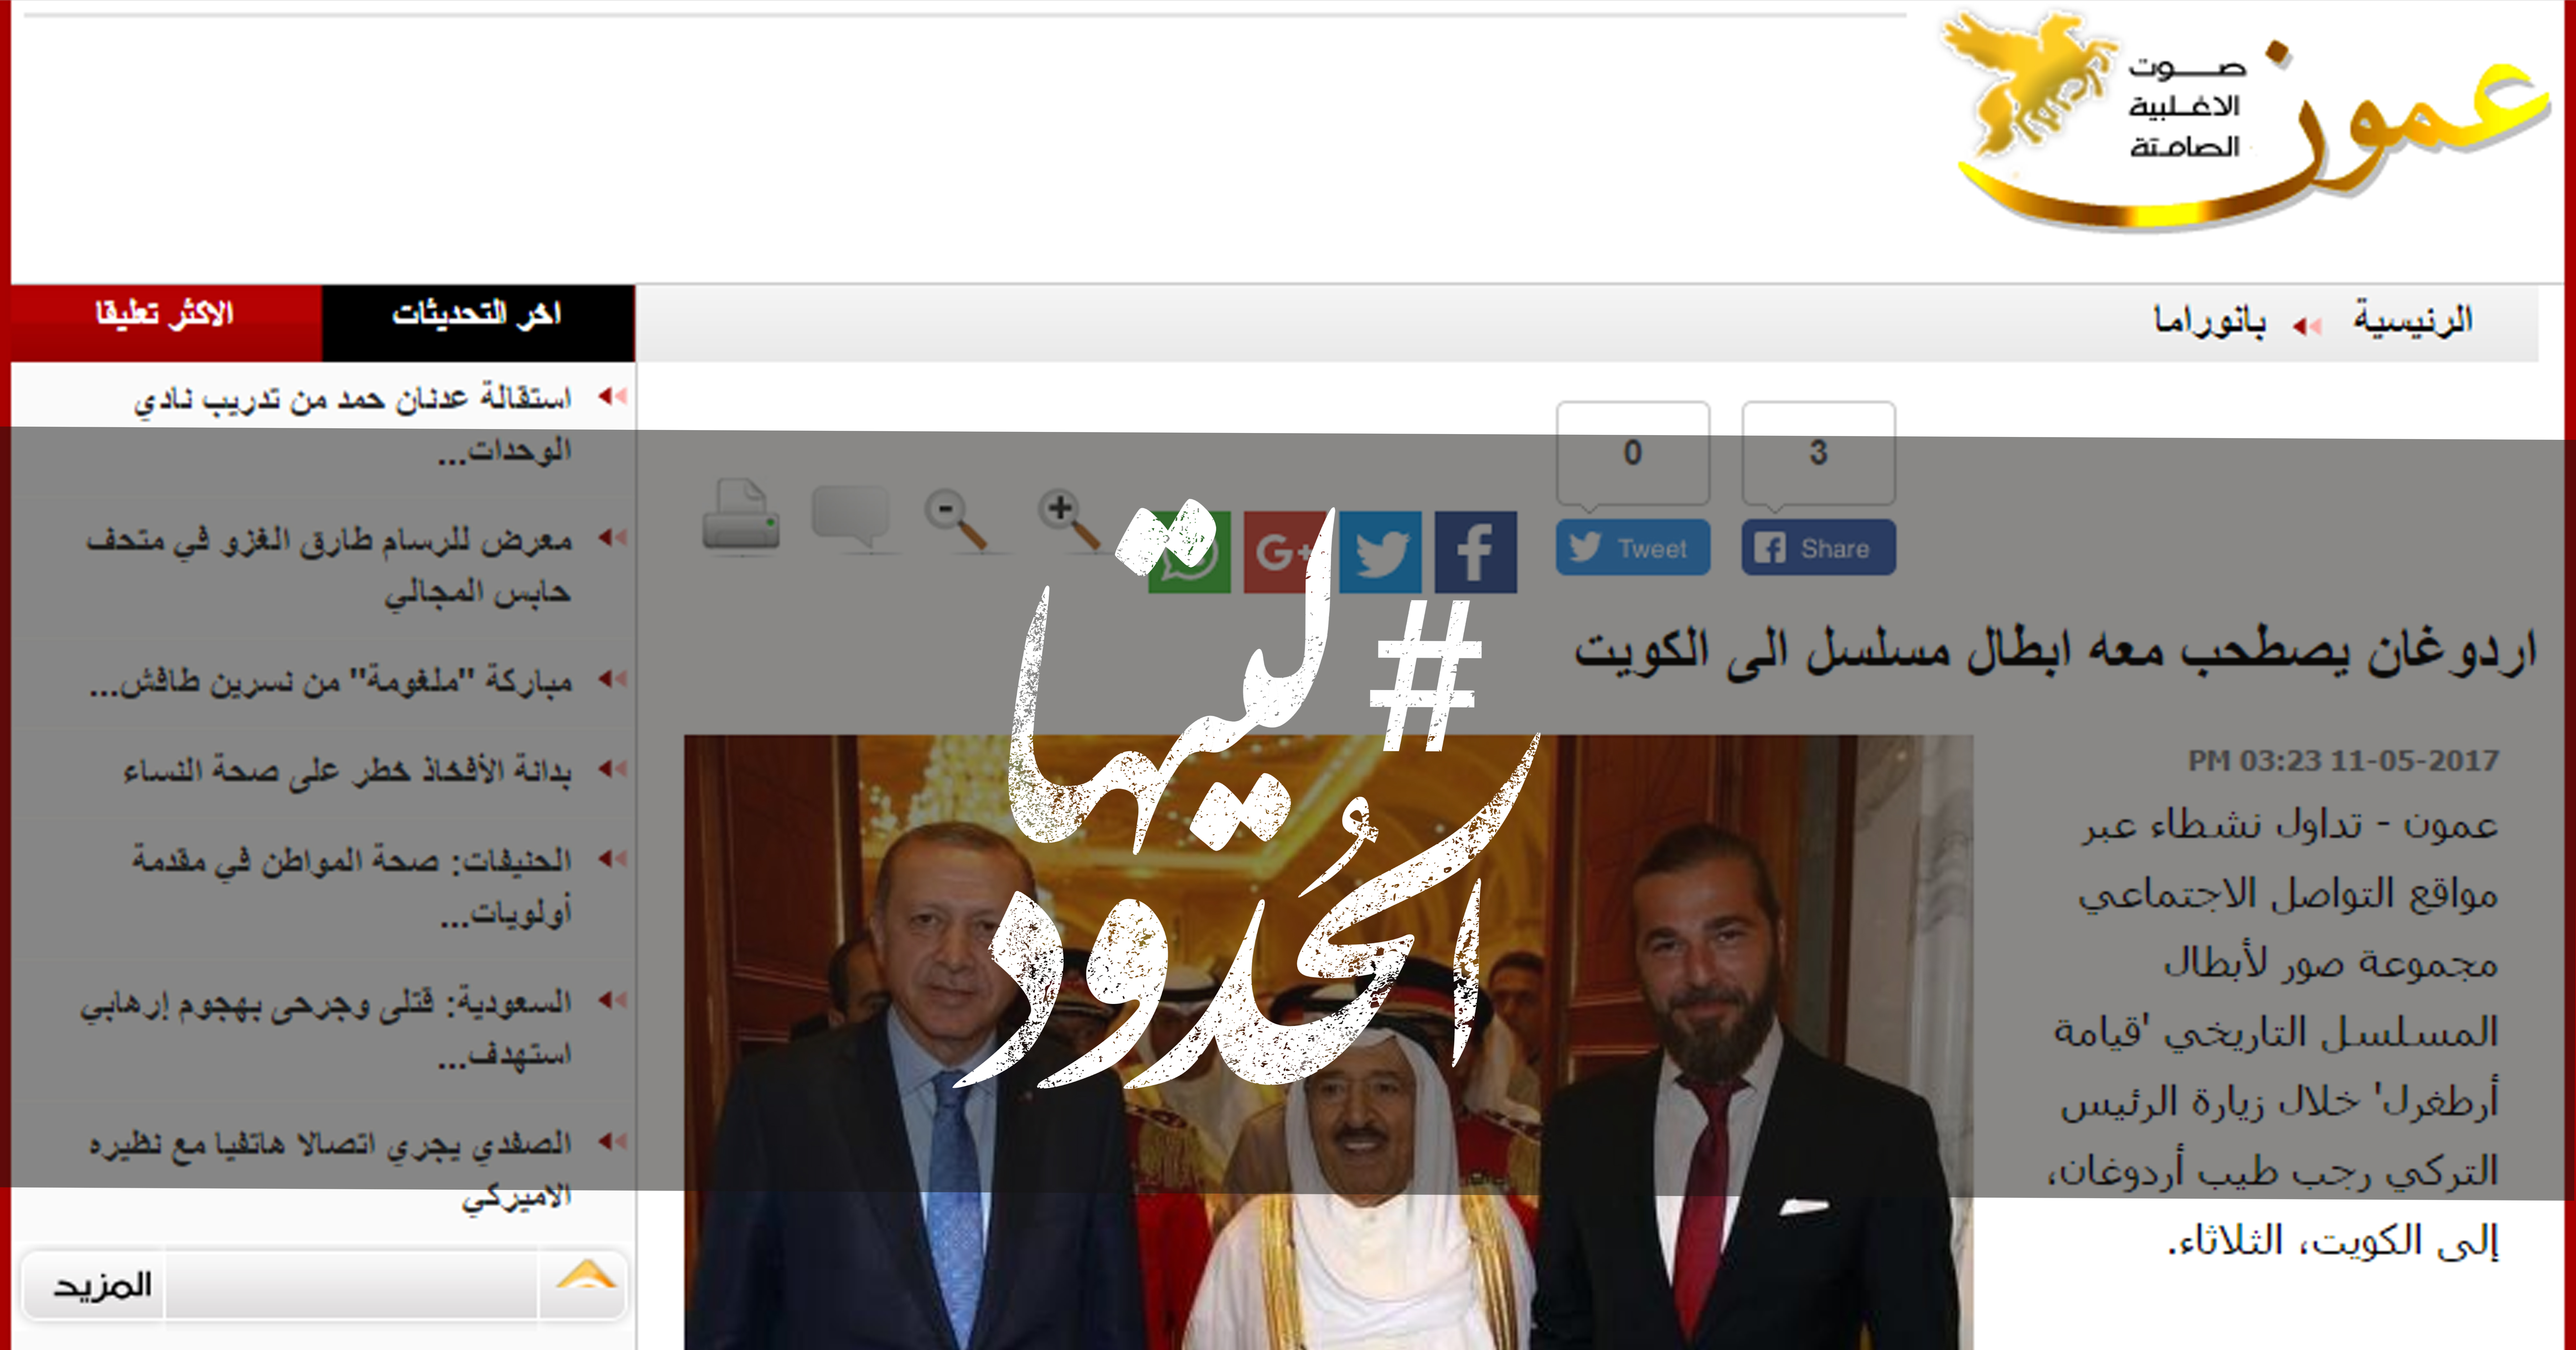 صورة اردوغان يصطحب معه ابطال مسلسل الى الكويت